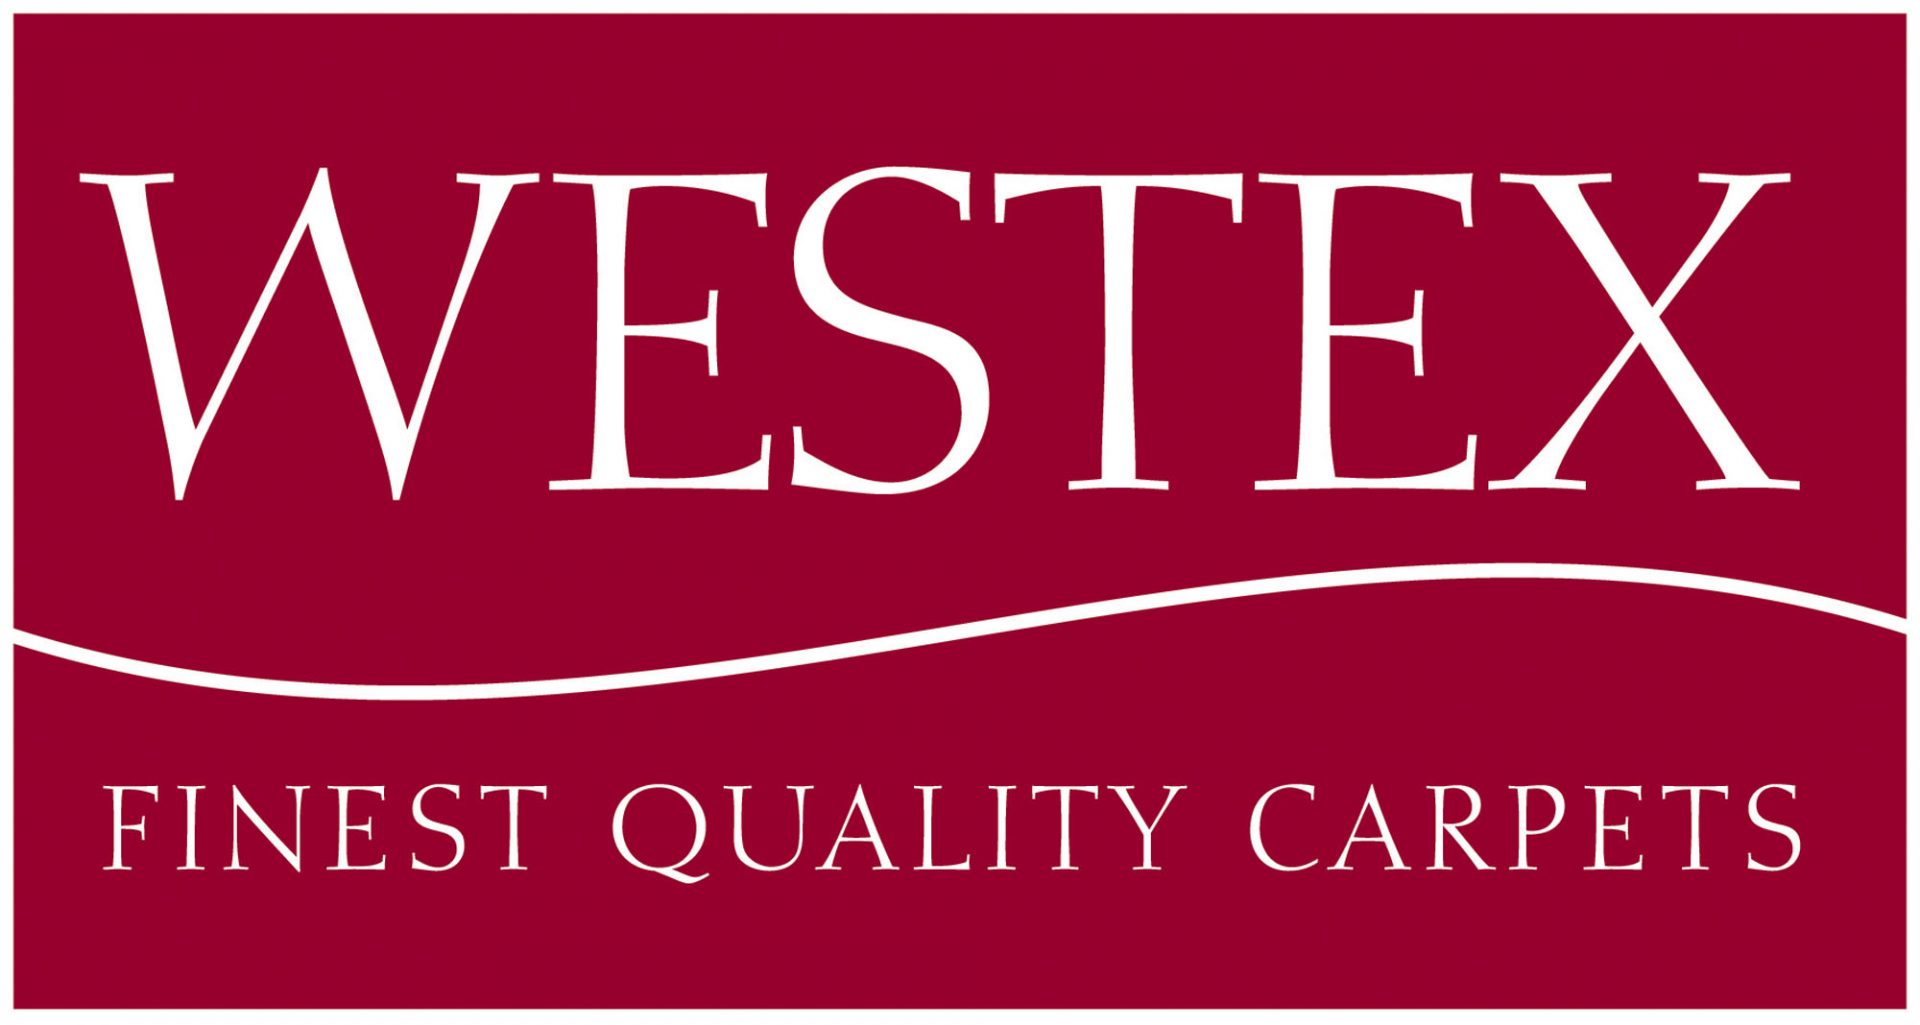 WESTEX-2008-logo-resize